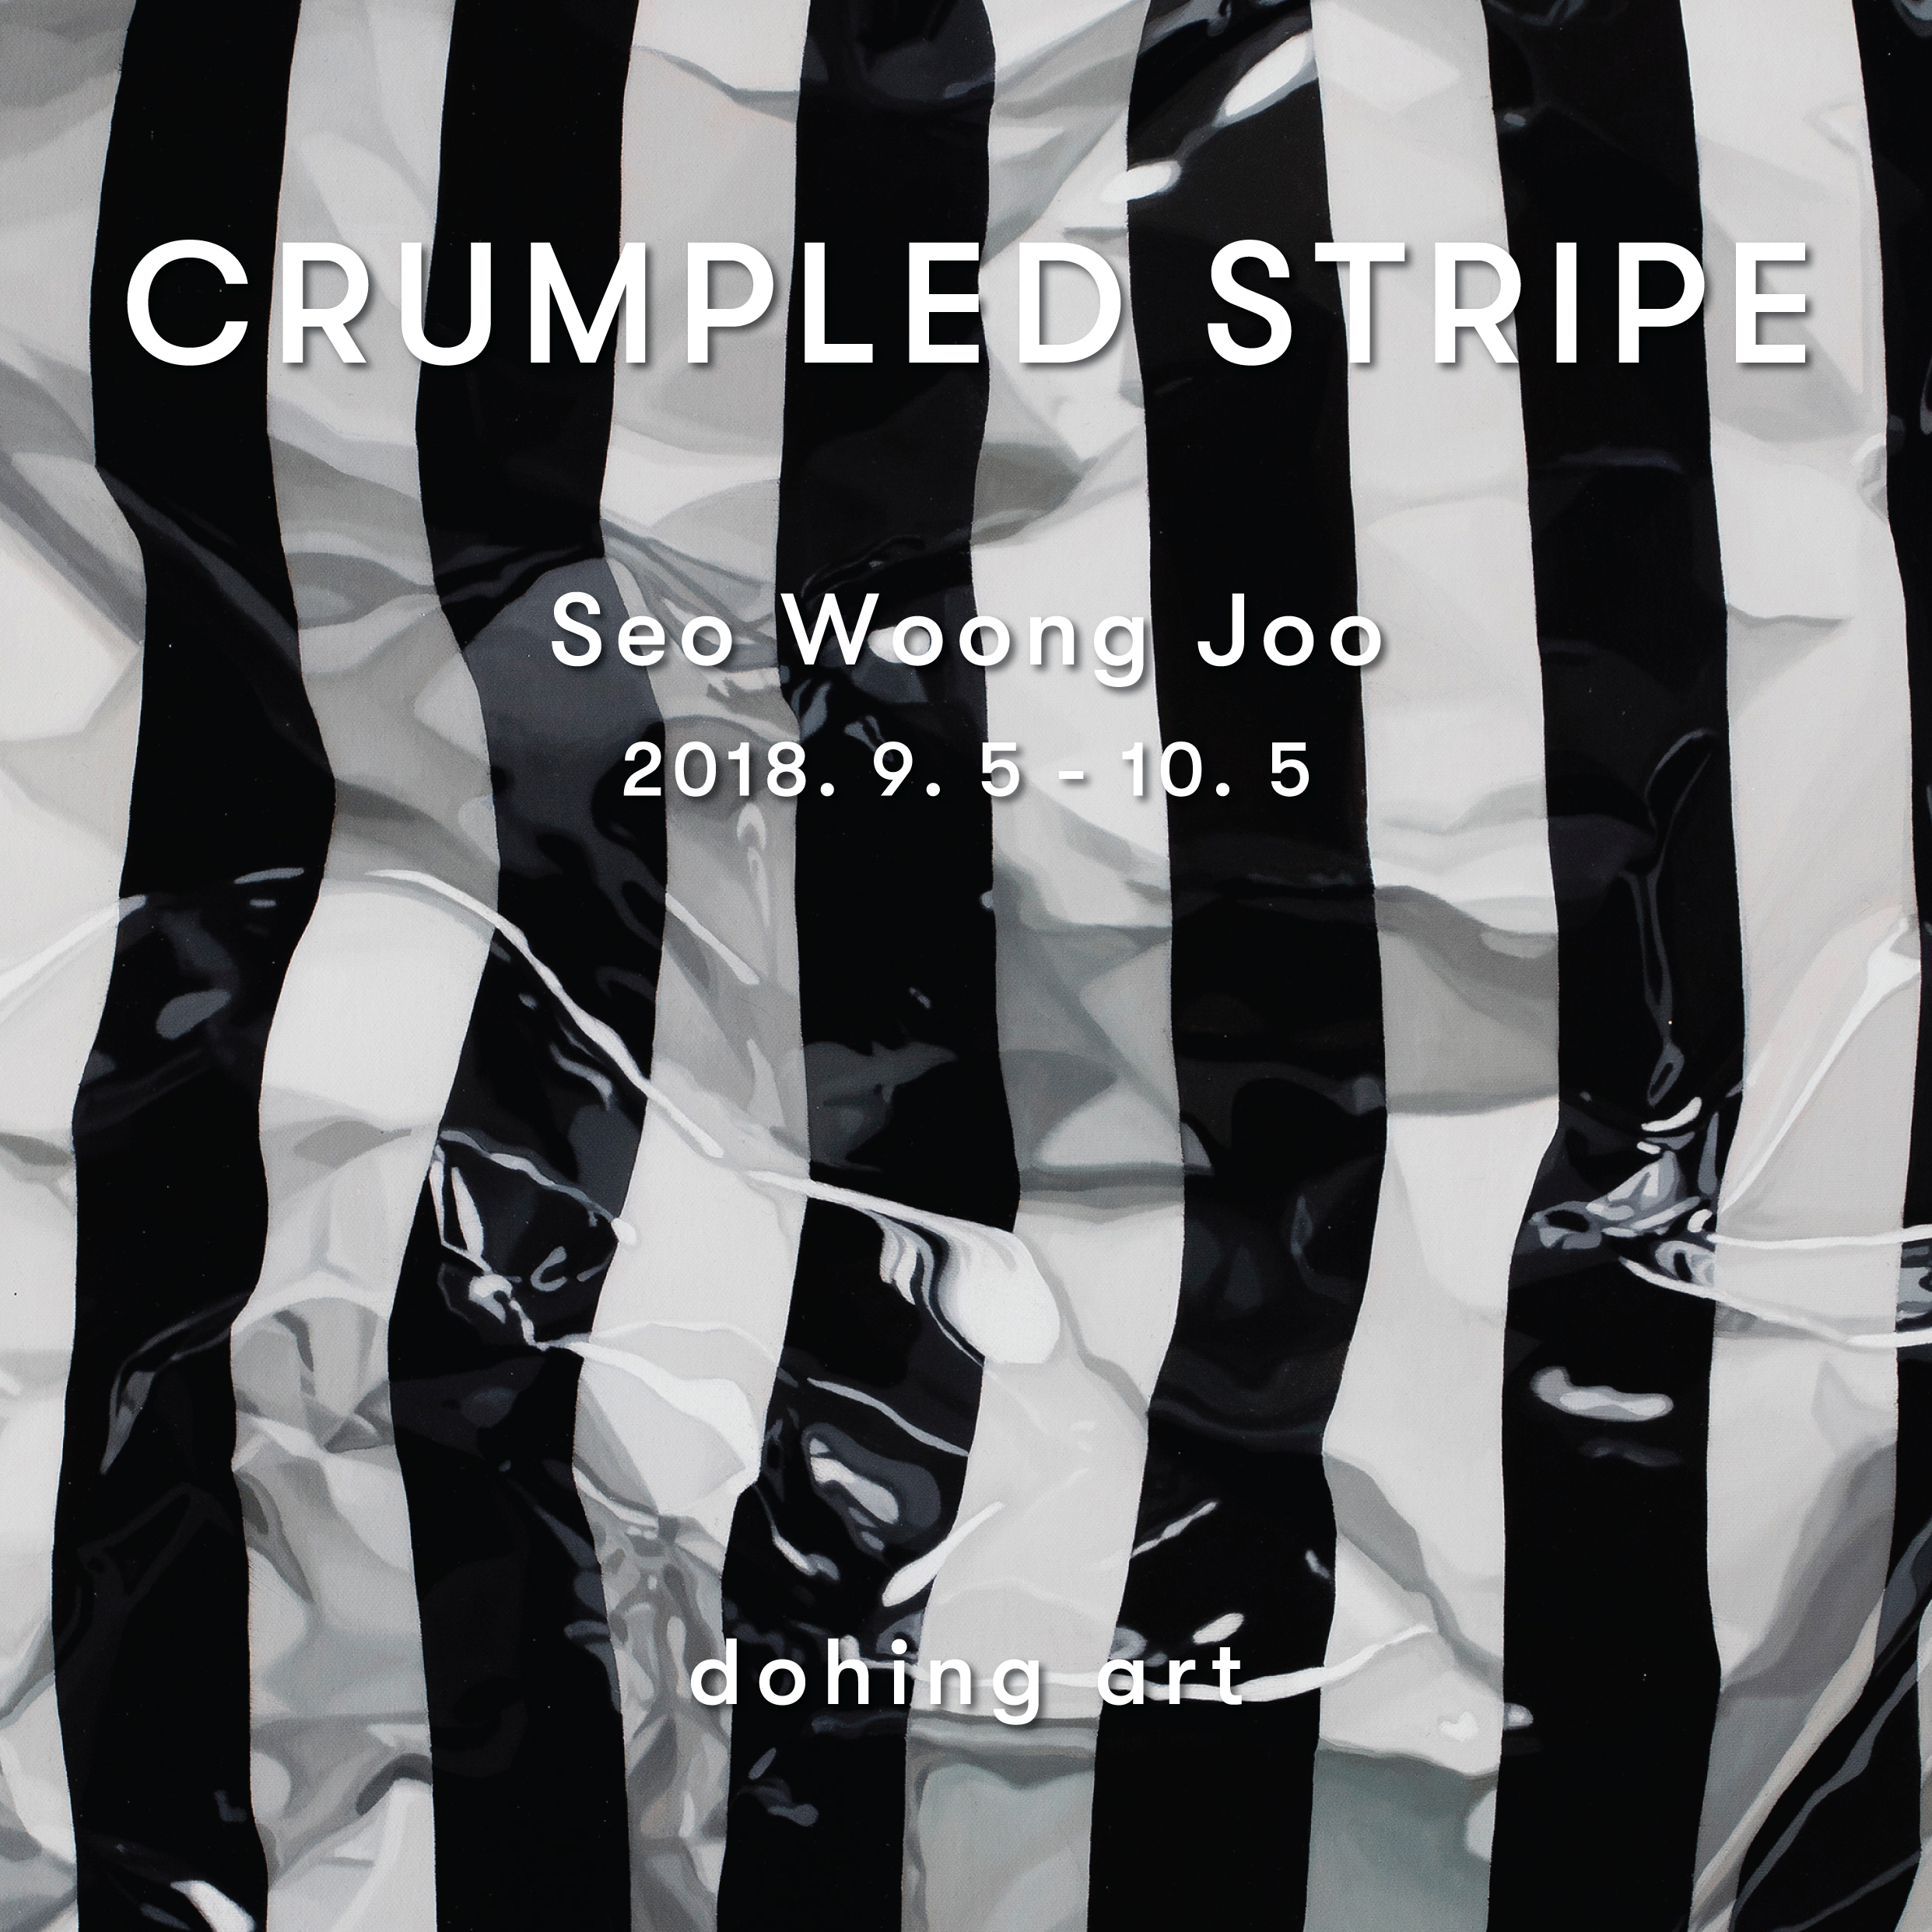 서웅주 개인전 ‘Crumpled stripe’</br>2018. 9. 5 – 10. 5